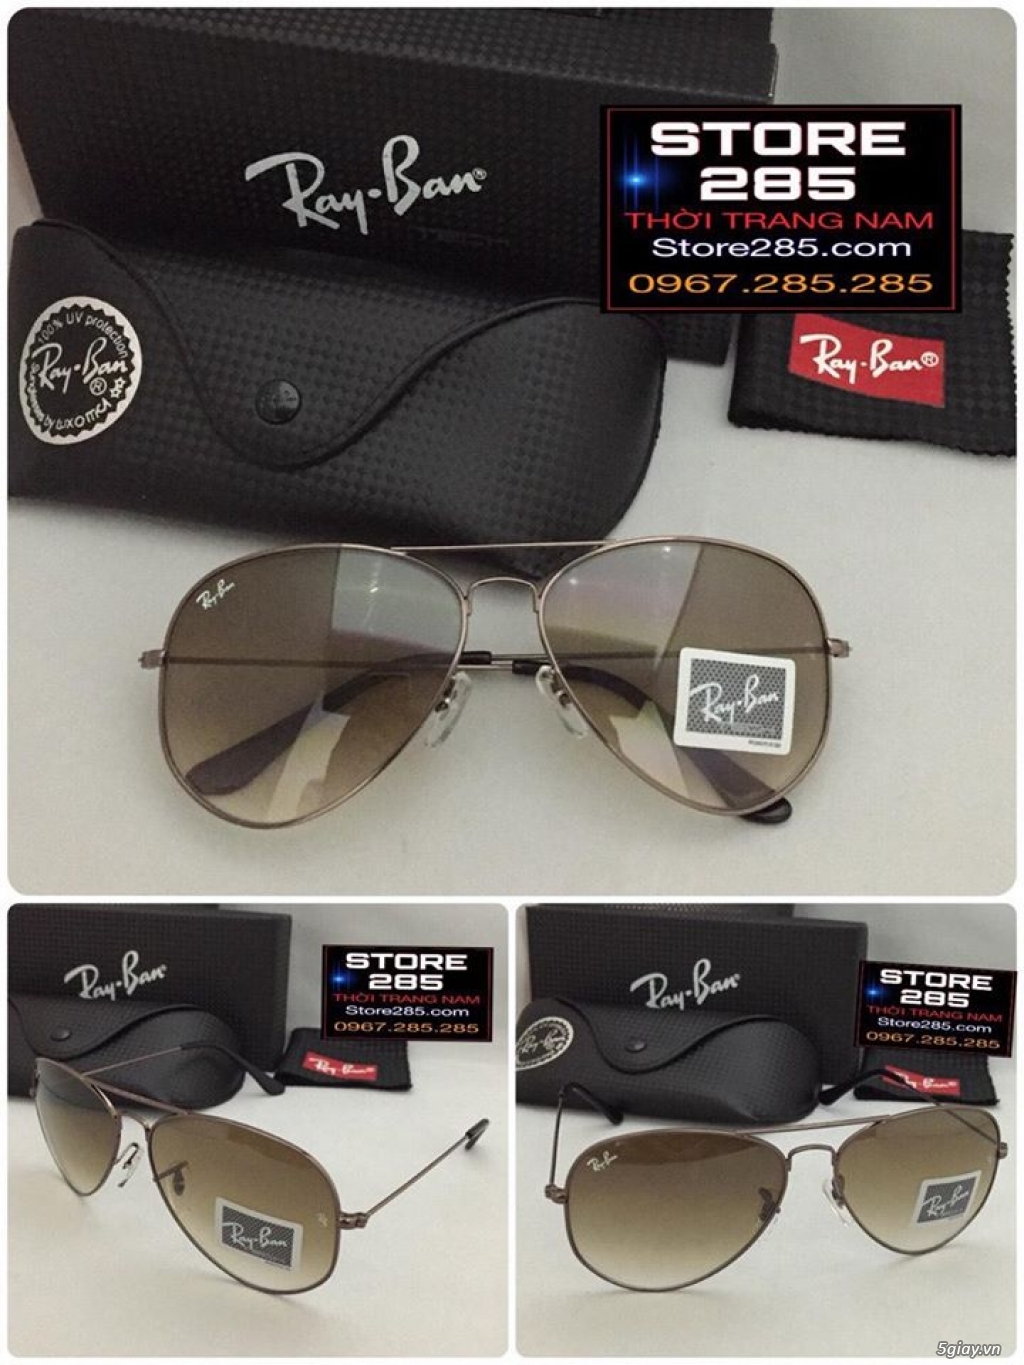 Shop285 Giá tốt 5giay: Chuyên mắt kính Rayban,thắt lưng,bóp da,Hàng XT USA,Sing,HK - 27